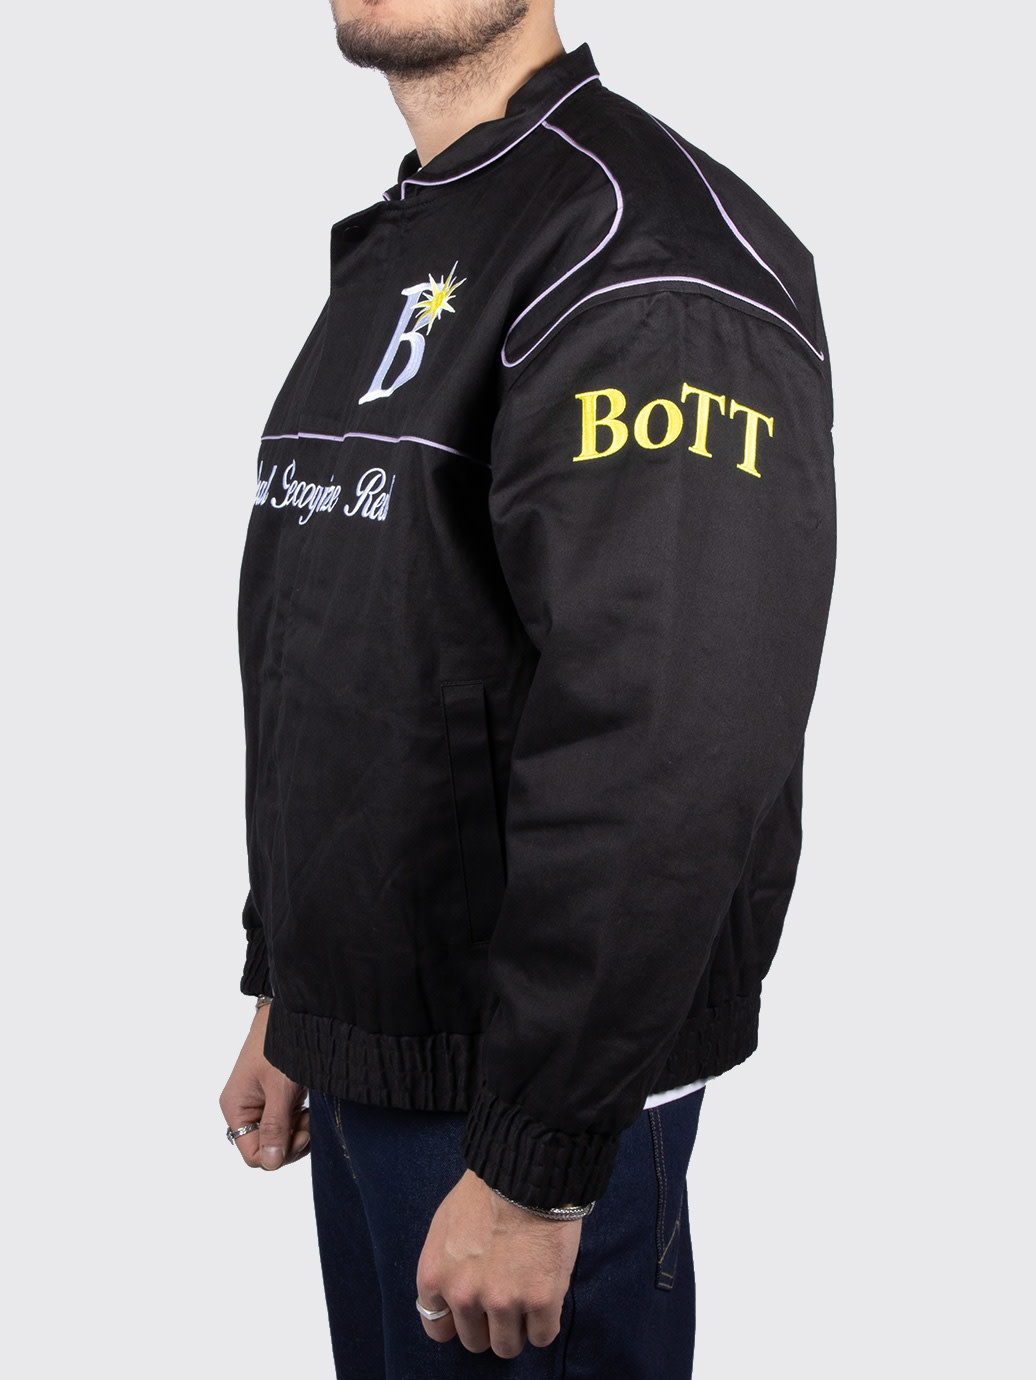 気軽にコメントしてくださいBott Cotton Racing Jacket XLサイズ